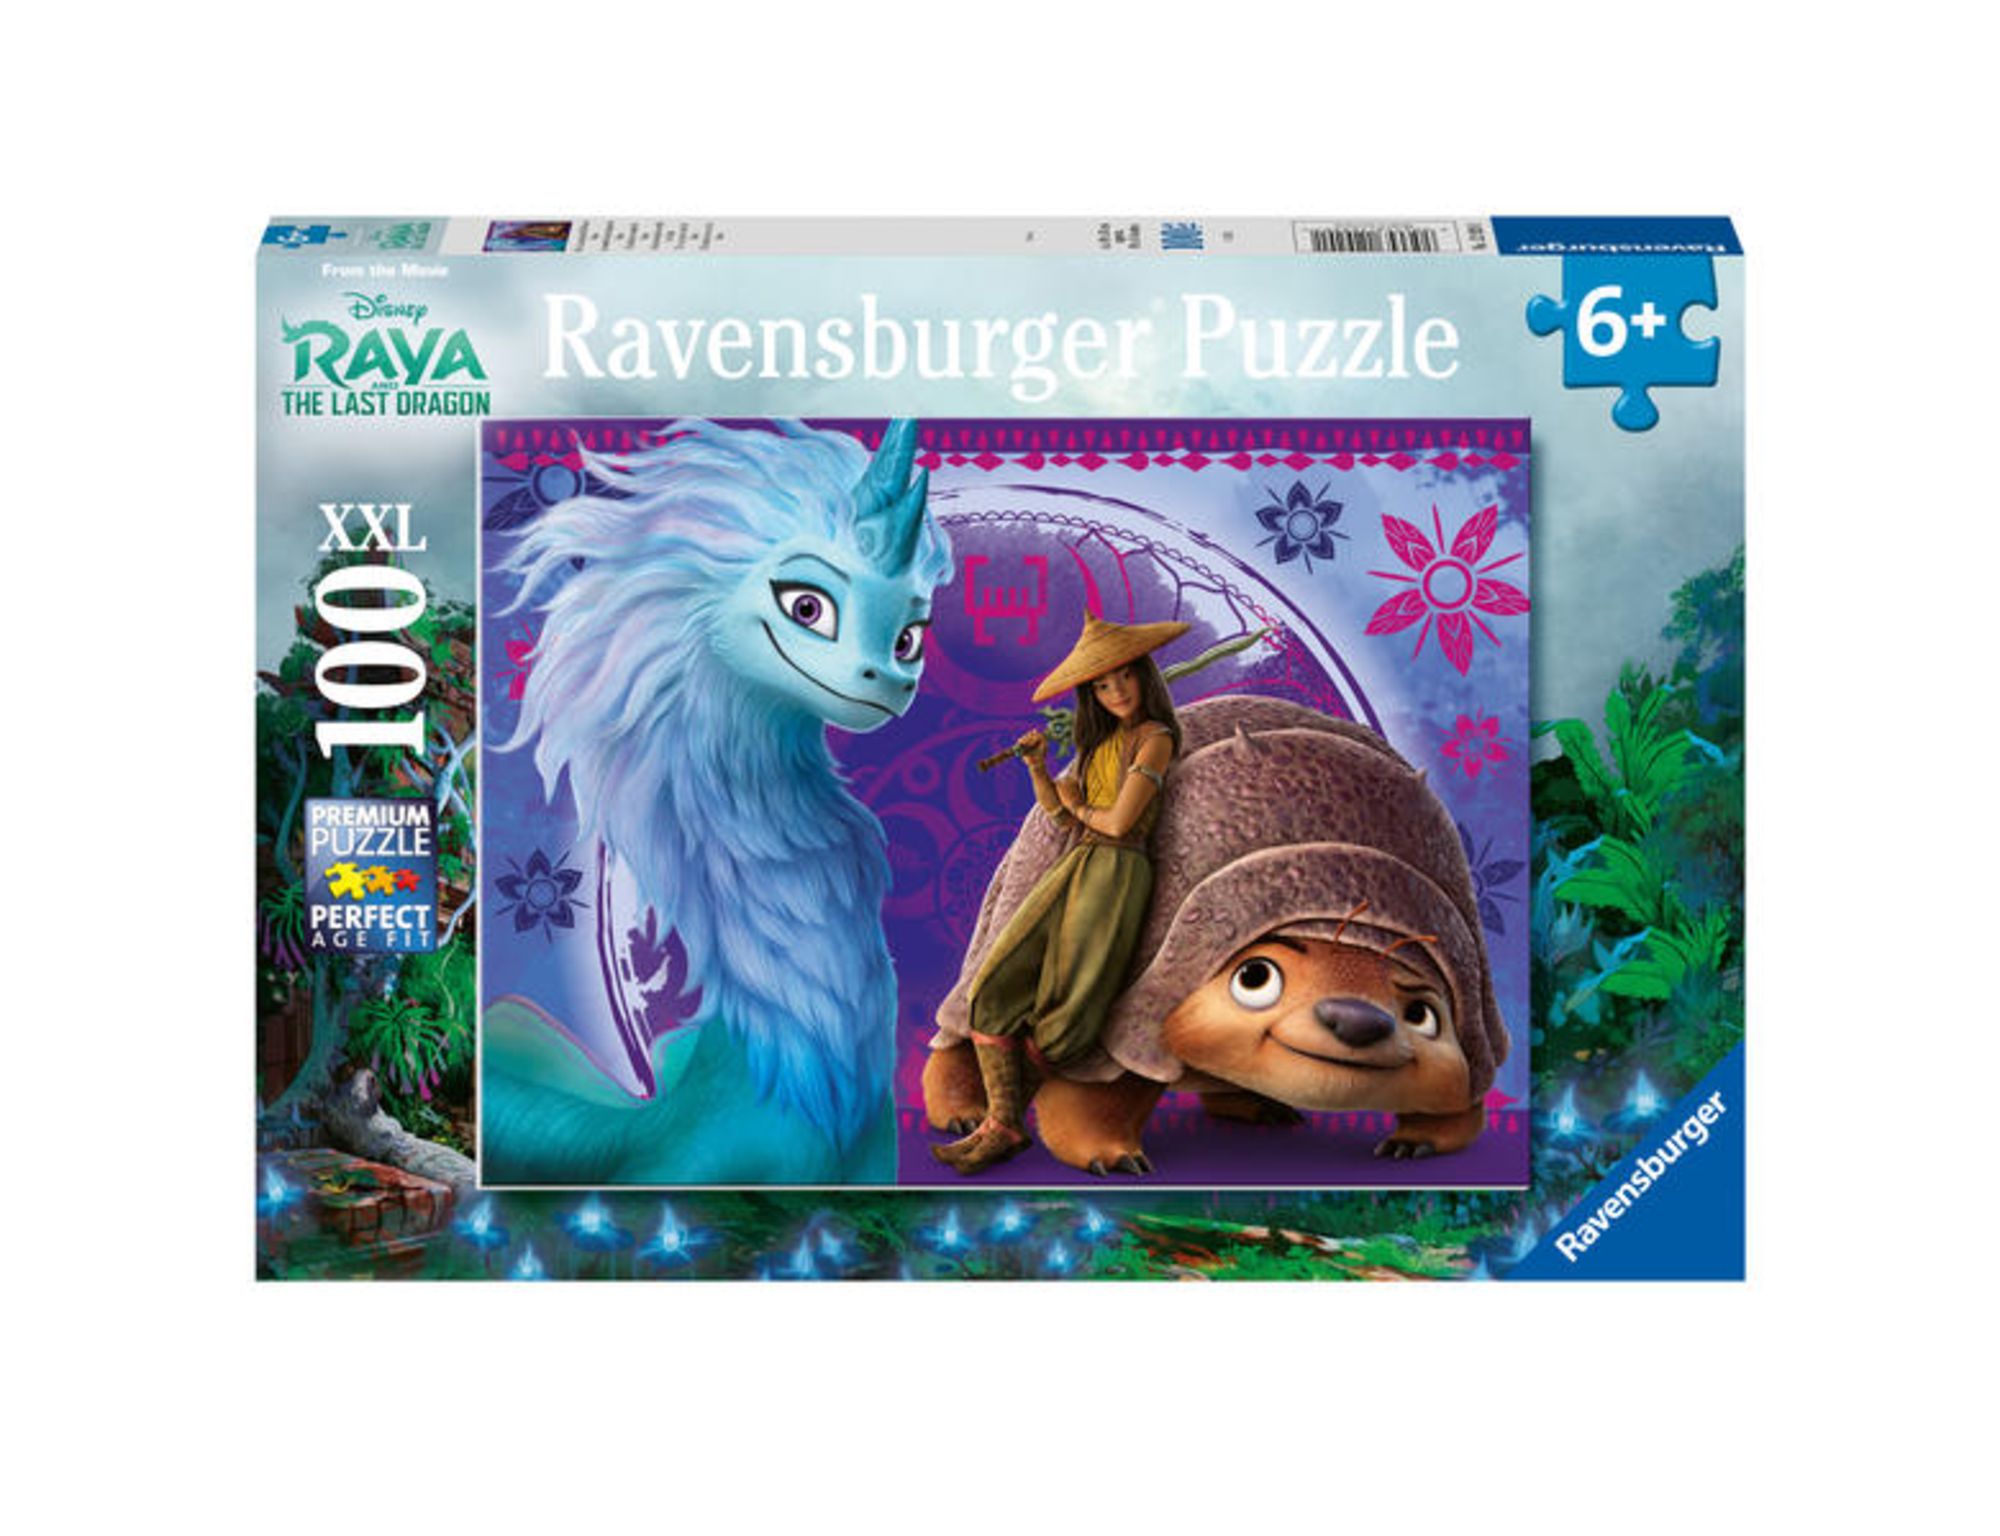 Puzzle Ravensburger Die fantastische Welt von Raya 100 Teile XXL' kaufen -  Spielwaren